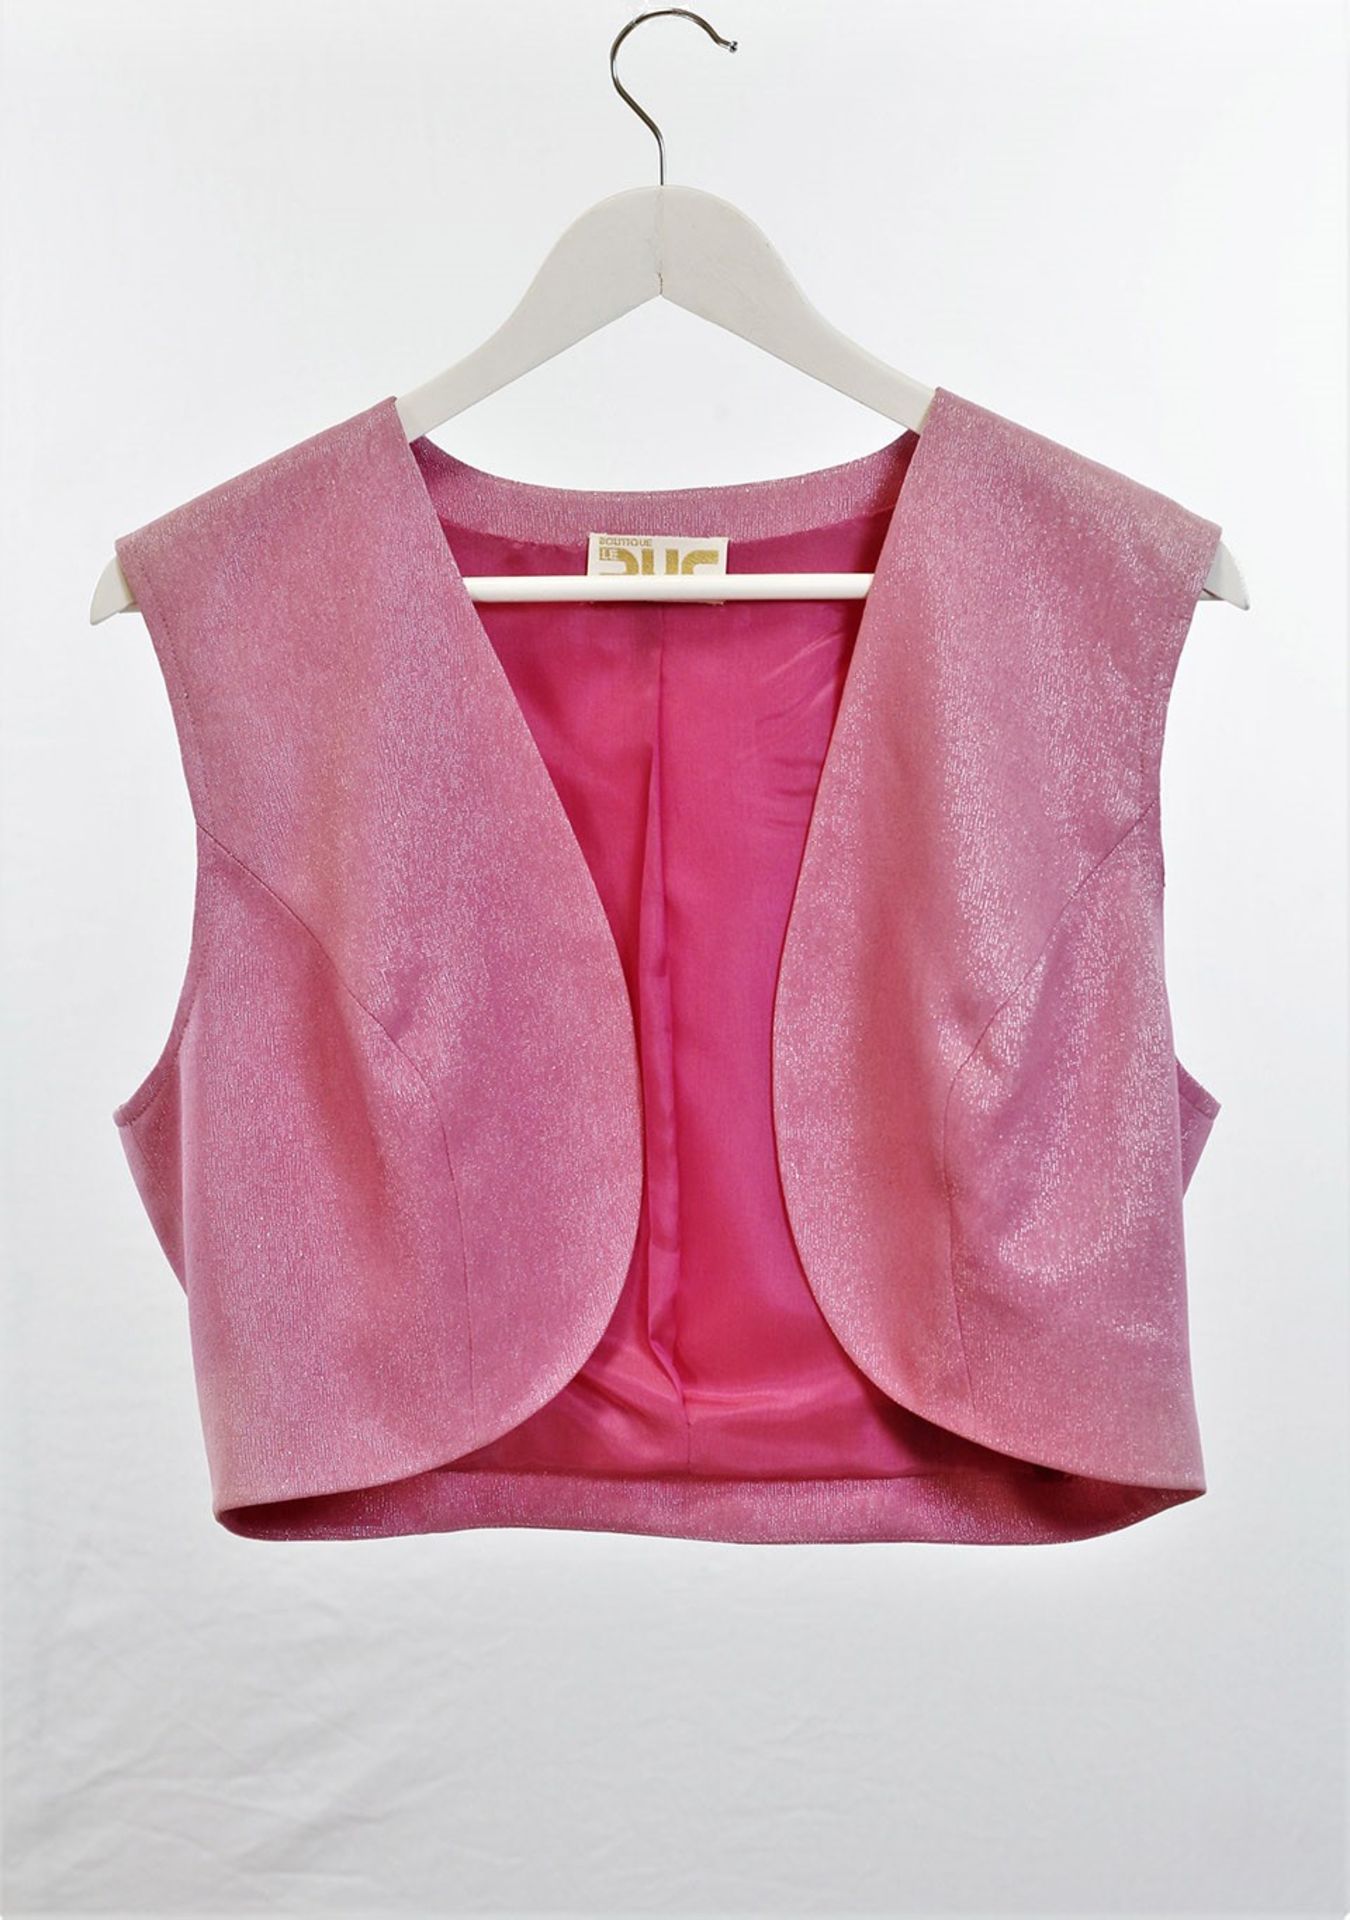 1 x Boutique Le Duc Pink Waistcoat - Size: L - Material: 49% Cotton, 40% Acetate, 11% Poly metal